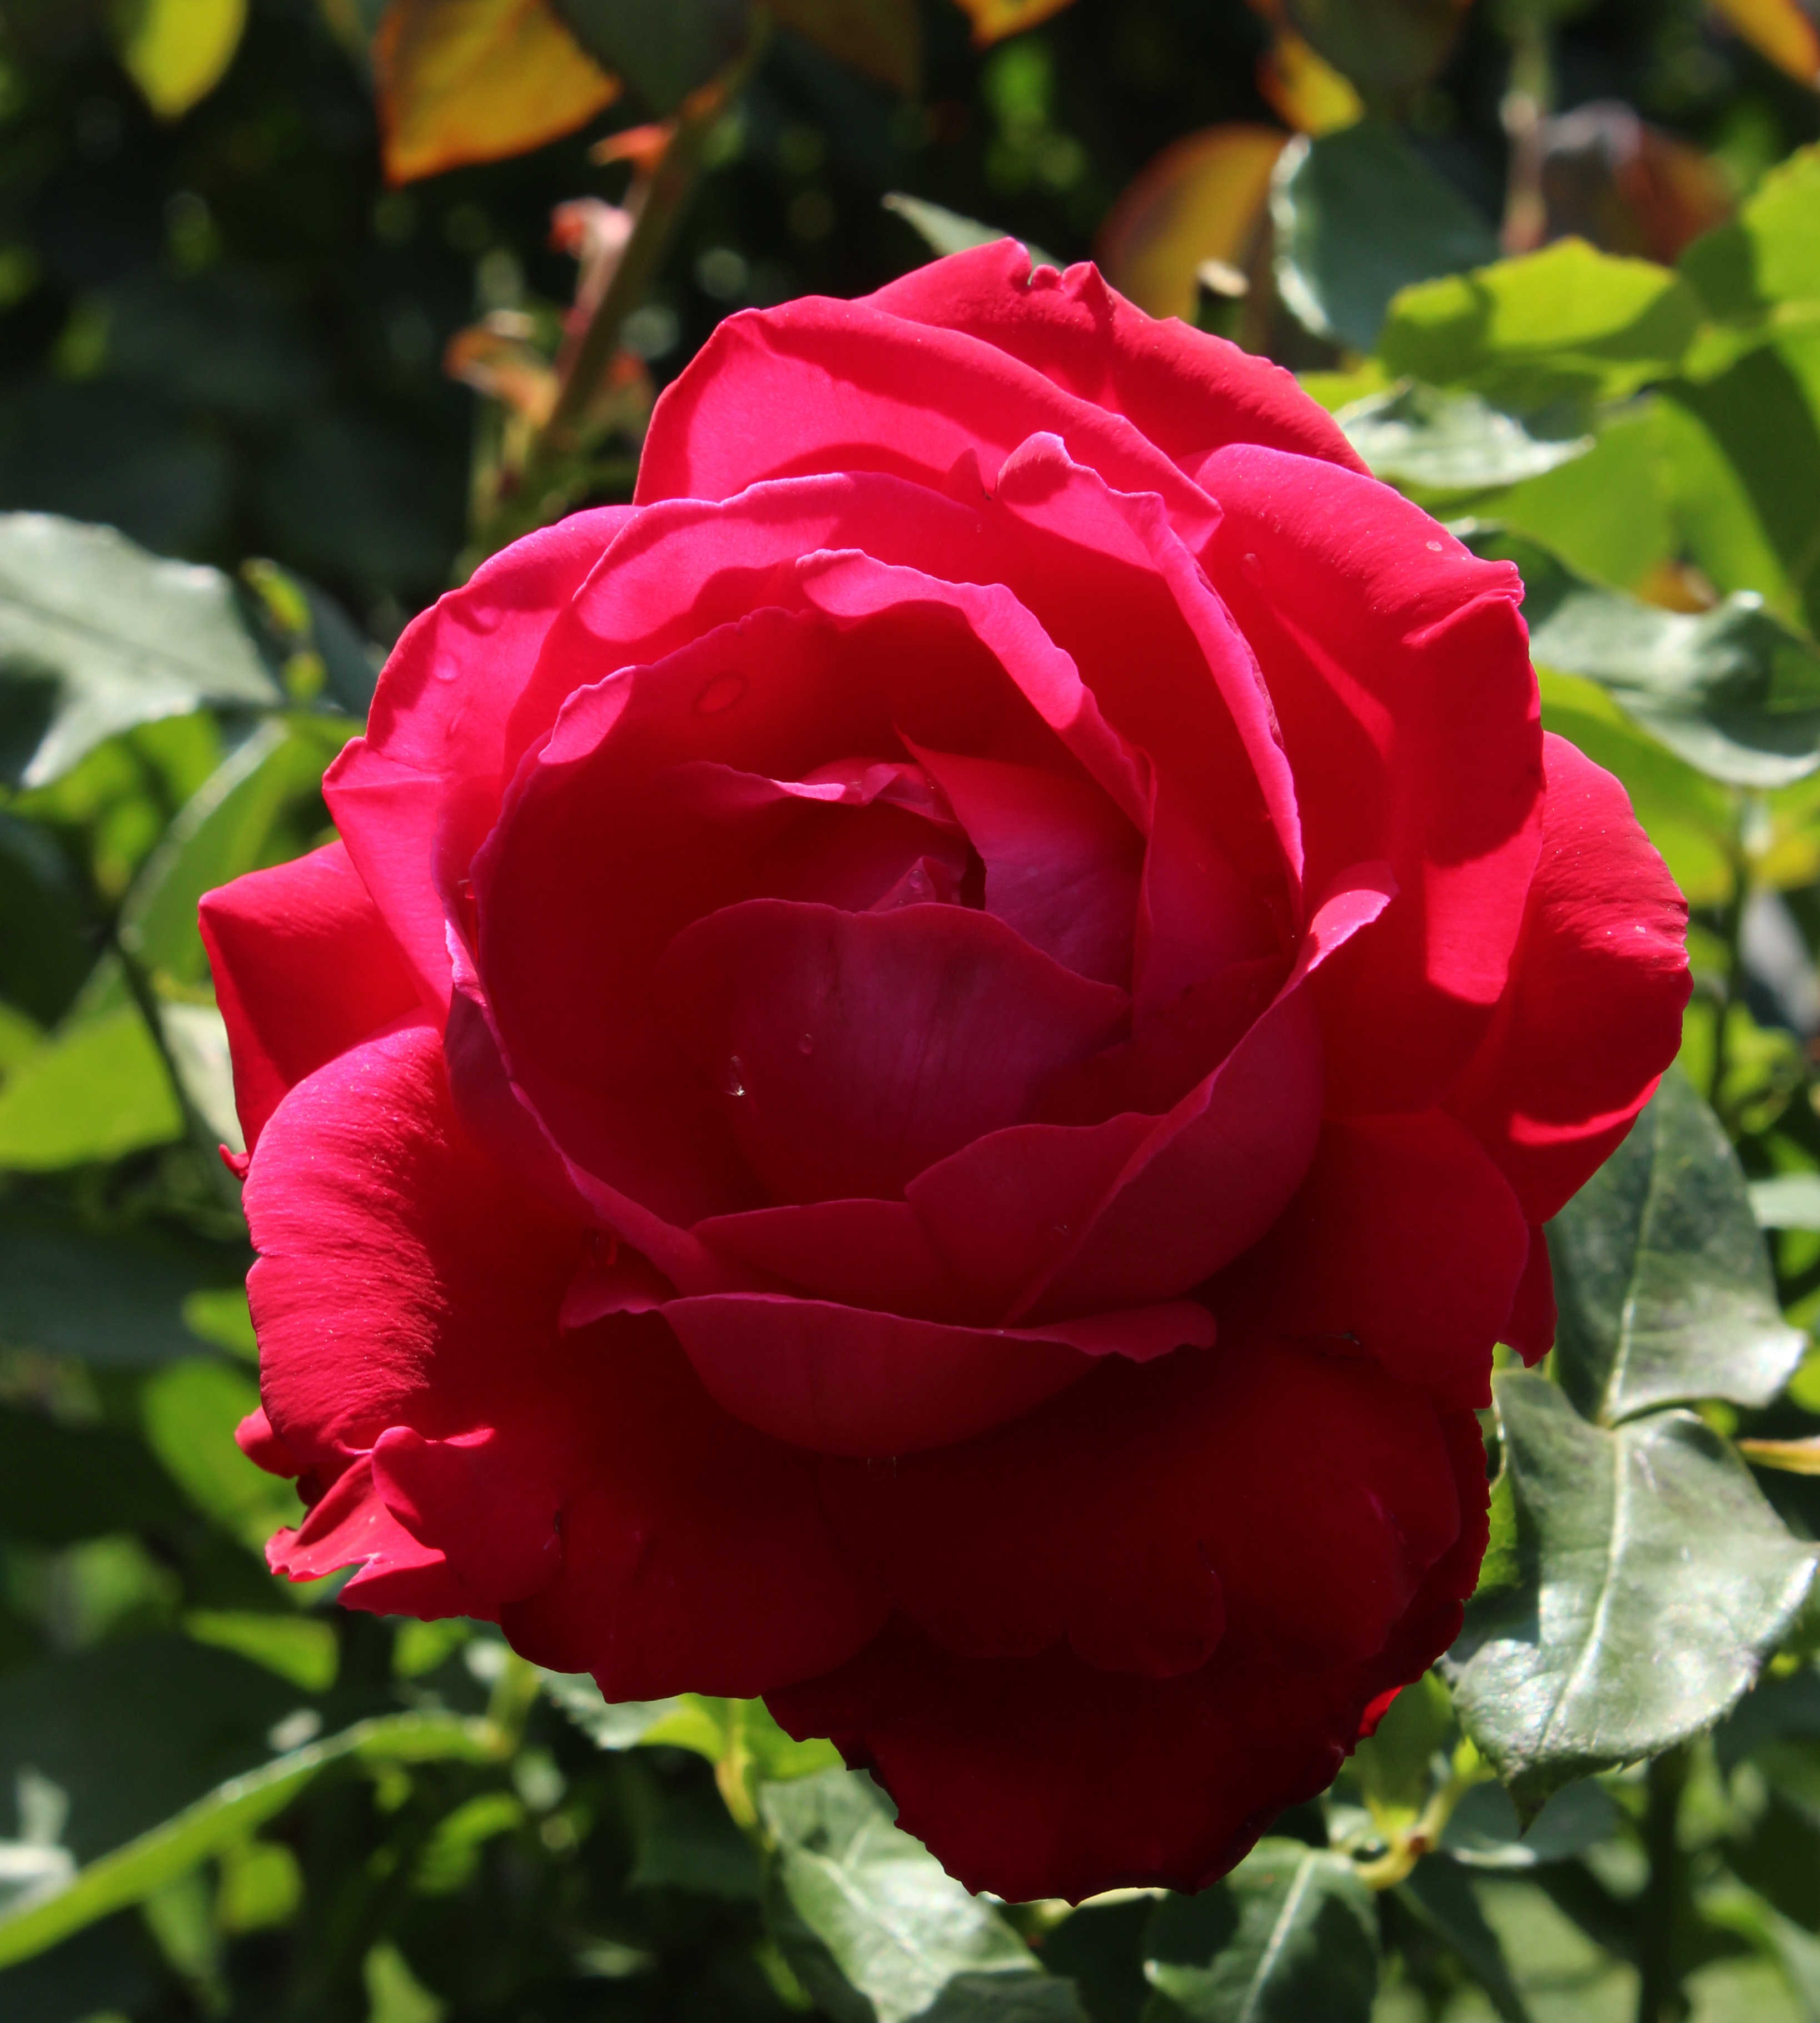 Роза чайно-гибридная Травиата